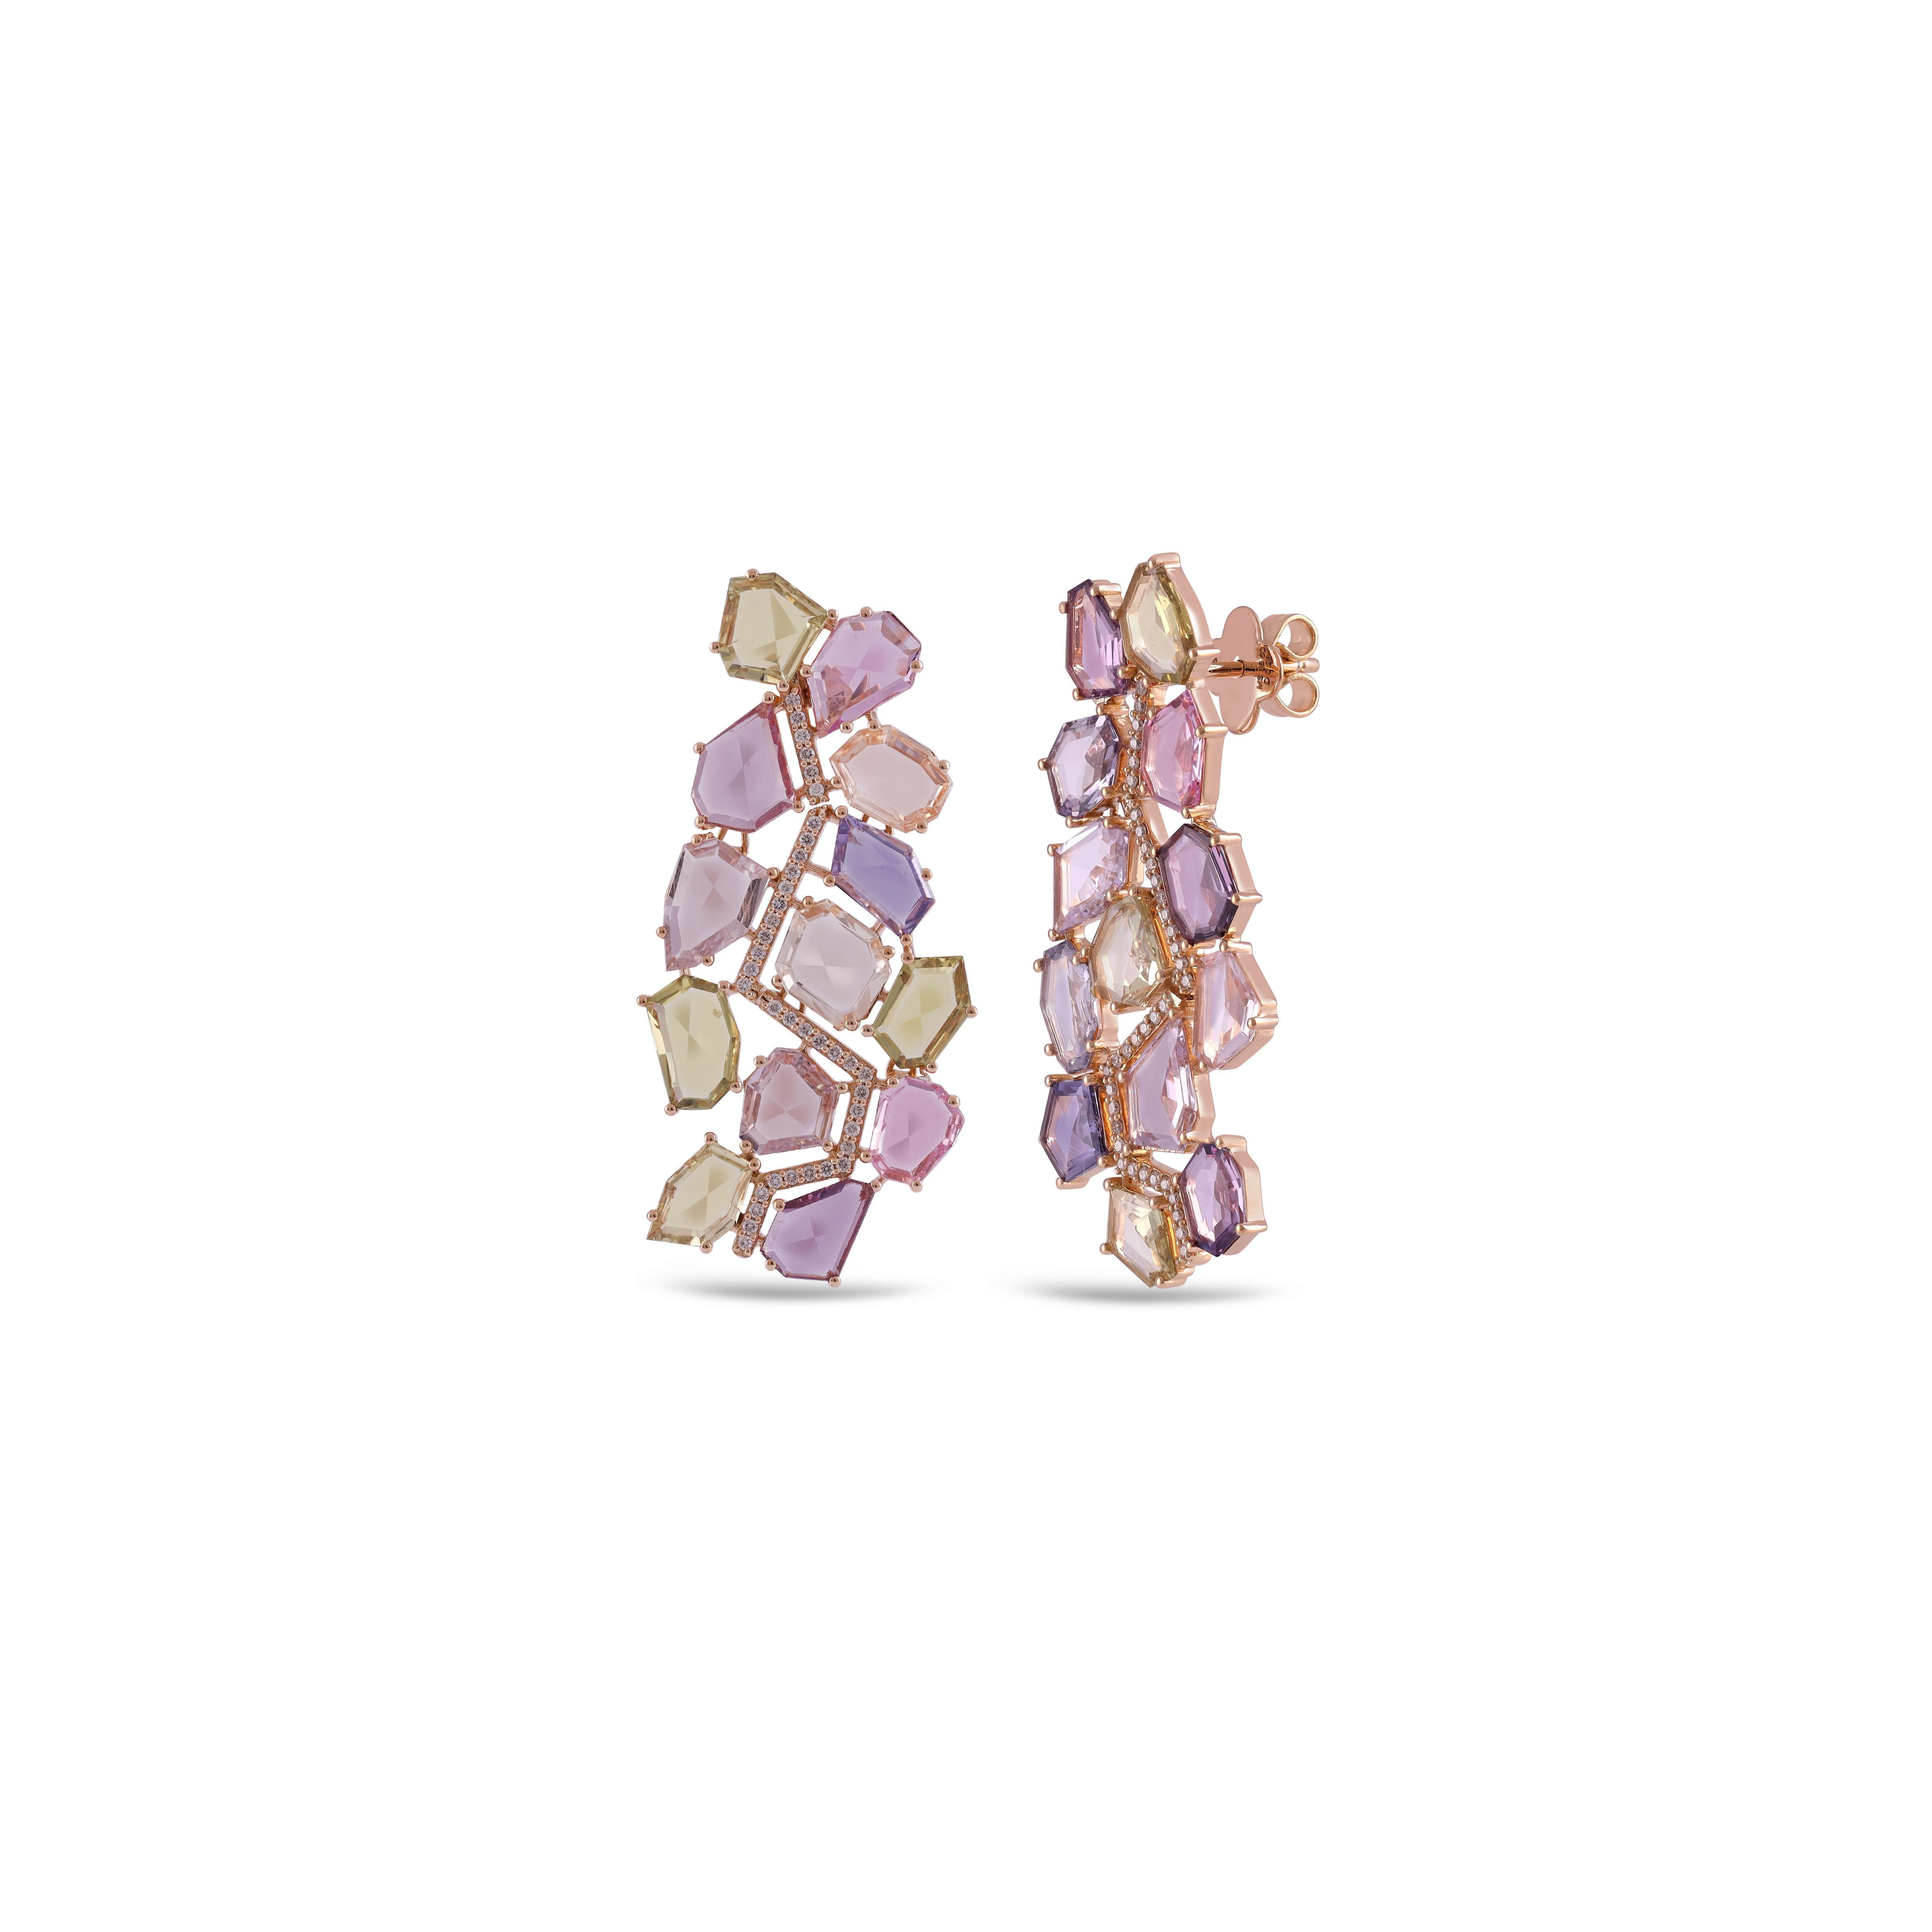 Boucles d'oreilles or rose rubis avec diamants
Boucles d'oreilles.

Rubis 7.44 Cts
Diamant 1.31 Cts


Services sur mesure
Le redimensionnement est possible.
Demande de personnalisation
